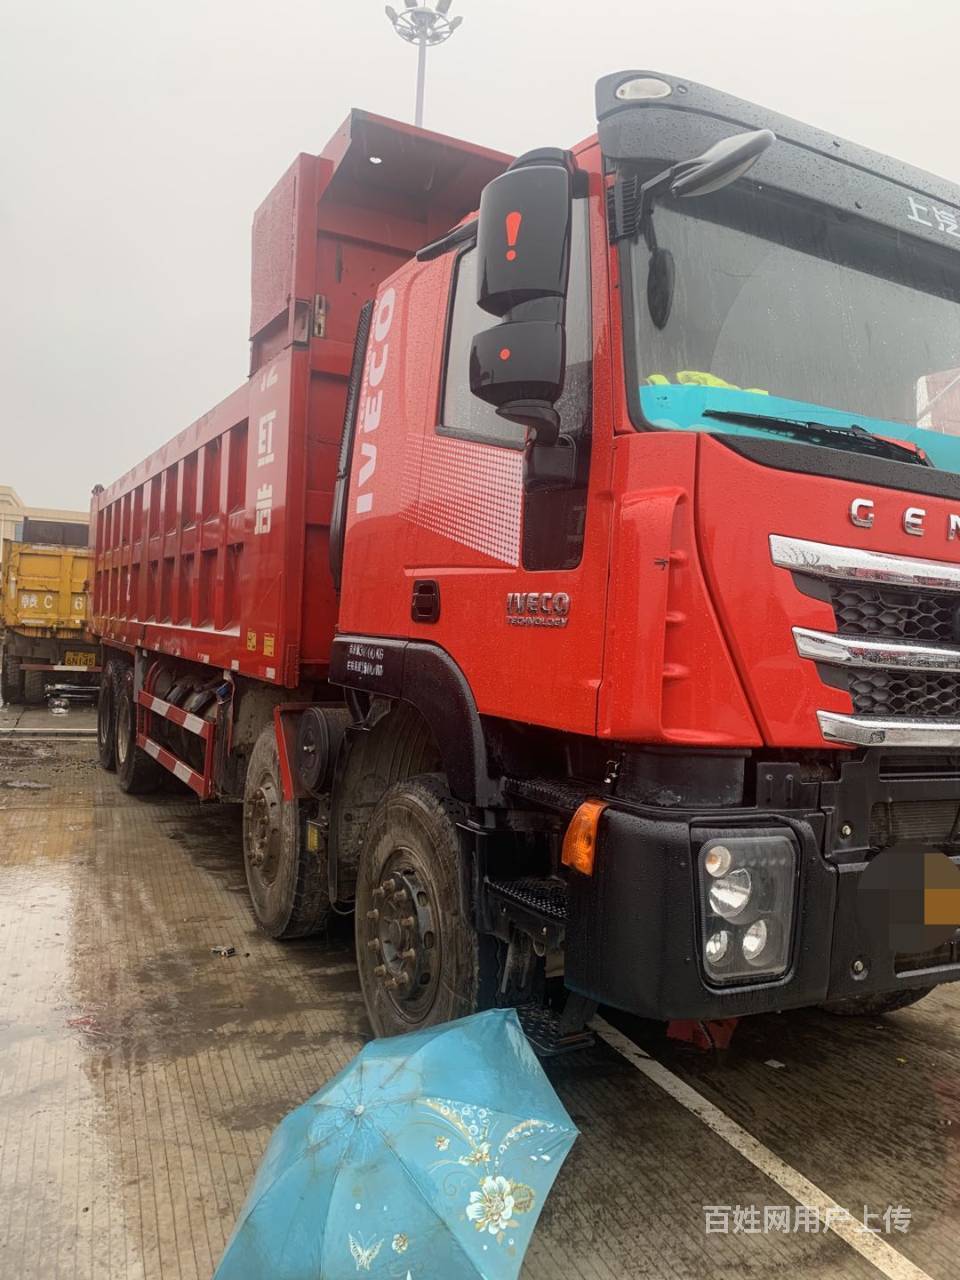 【图】- 红岩杰狮c500自卸,18年10月,科索430马力 - 赣州赣县货车